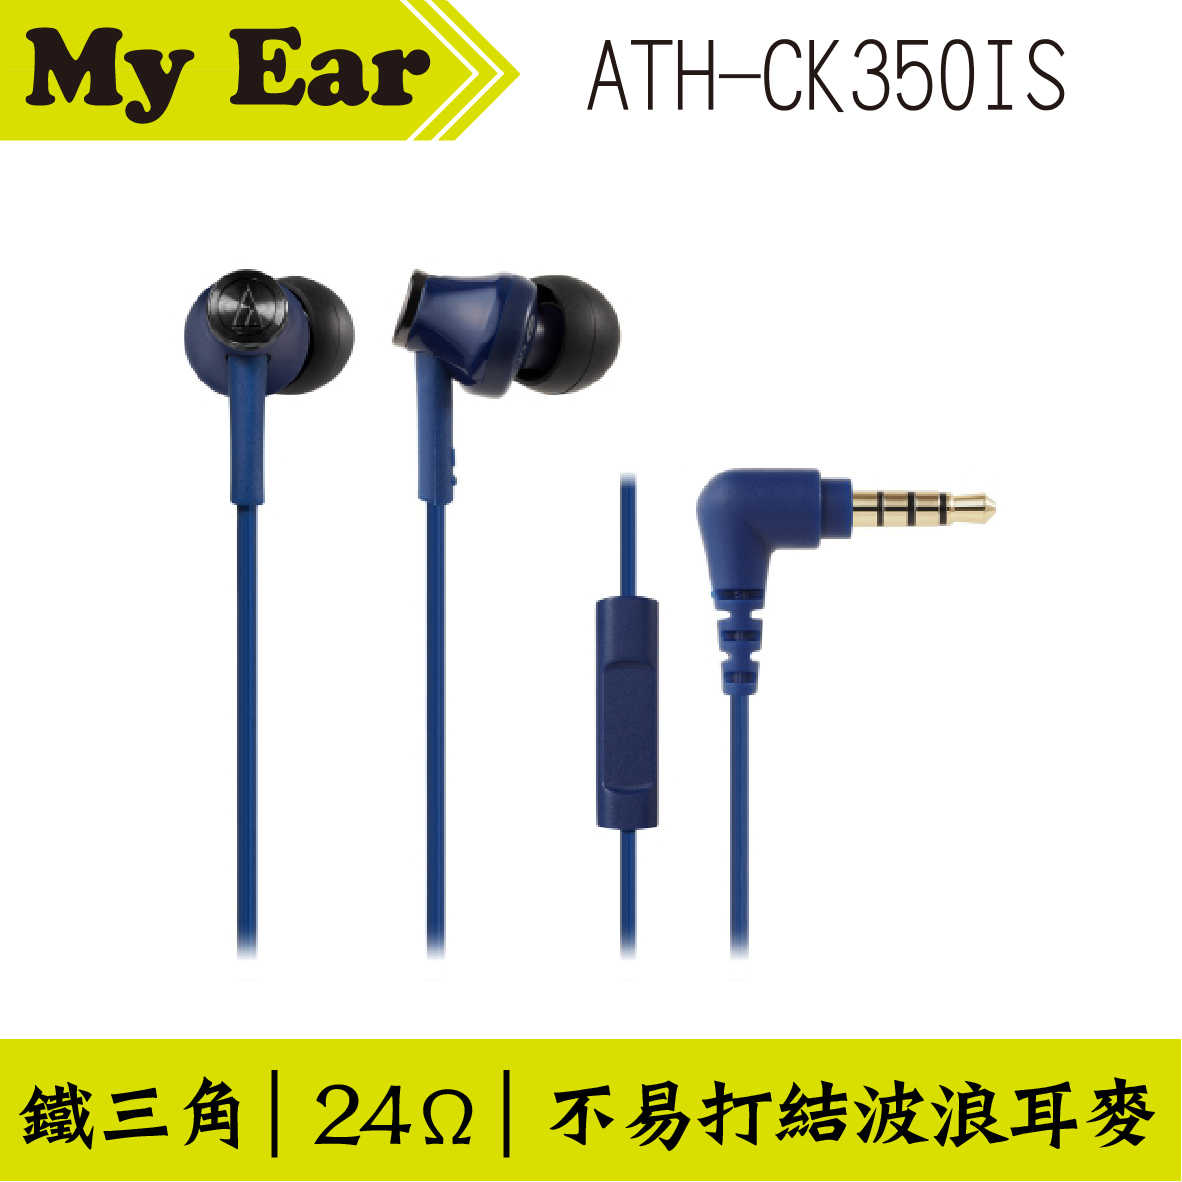 鐵三角 ATH-CK350IS 耳機麥克風 紅色  | My Ear 耳機專門店